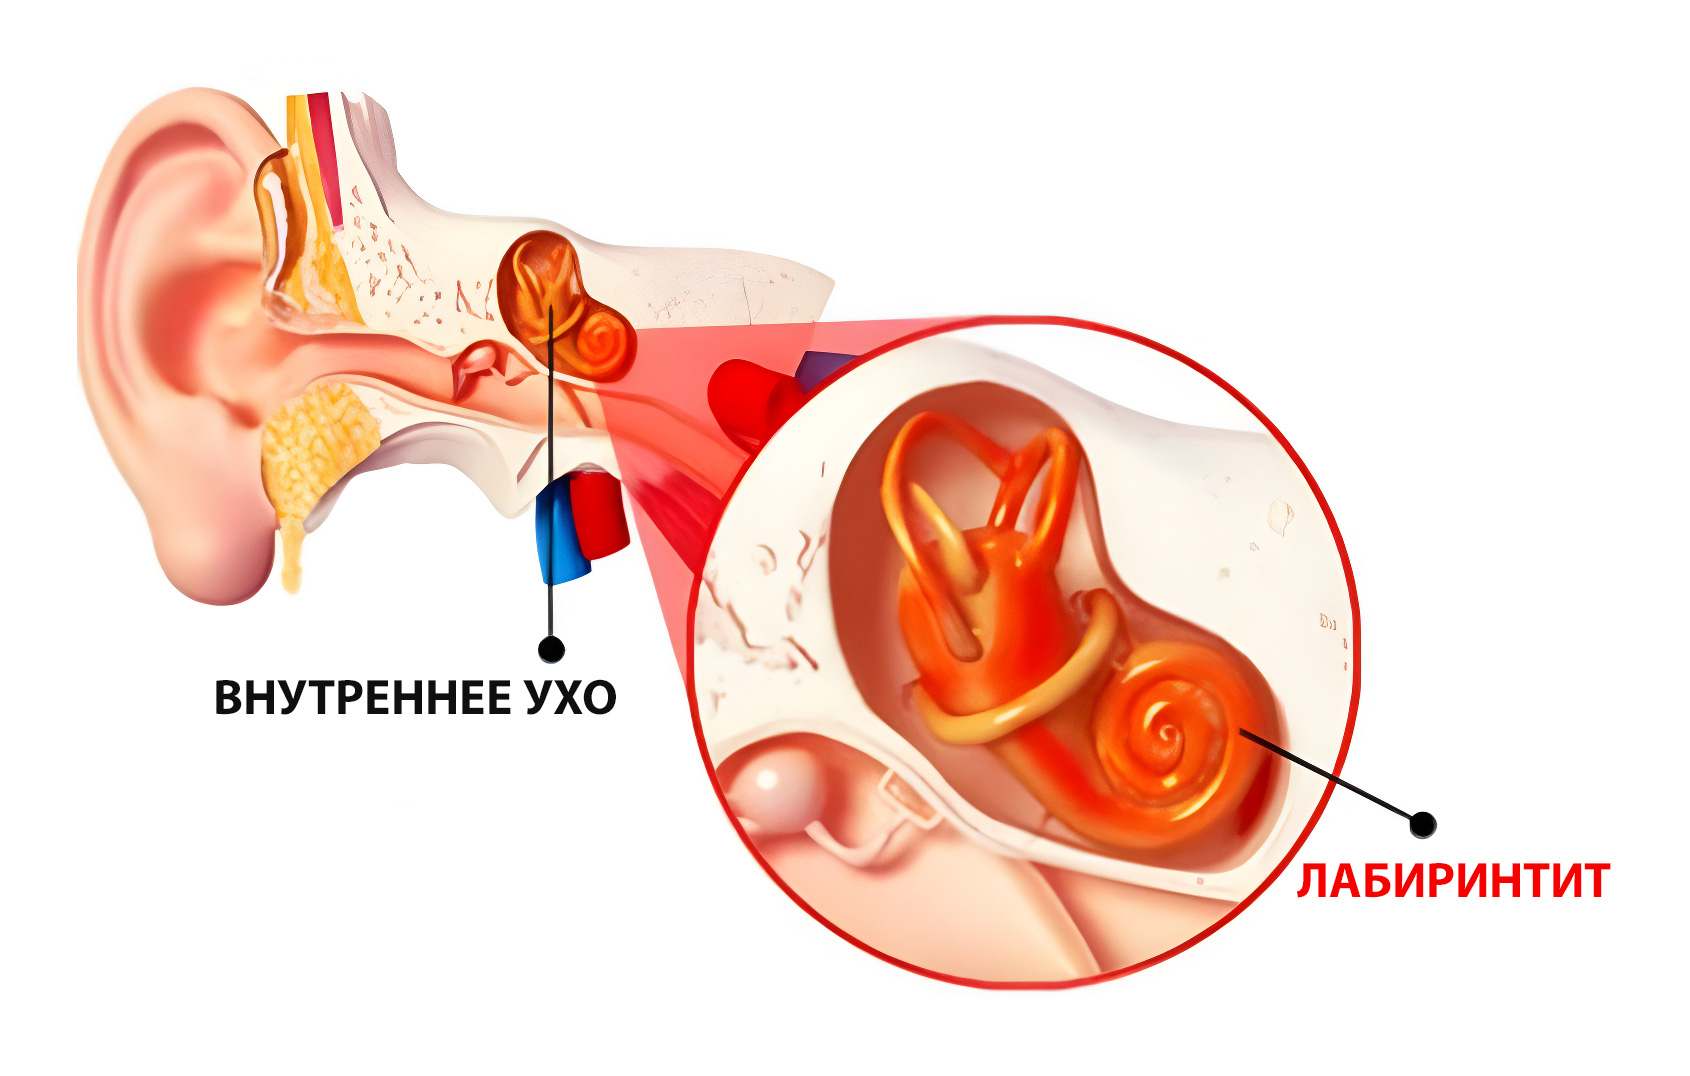 Нарушение среднего уха. Воспаление внутреннего уха лабиринтит. Воспаление среднего уха (лабиринтит);. Воспаление среднего уха лабиринтит симптомы. Воспалительные заболевания внутреннего уха (лабиринтиты)..